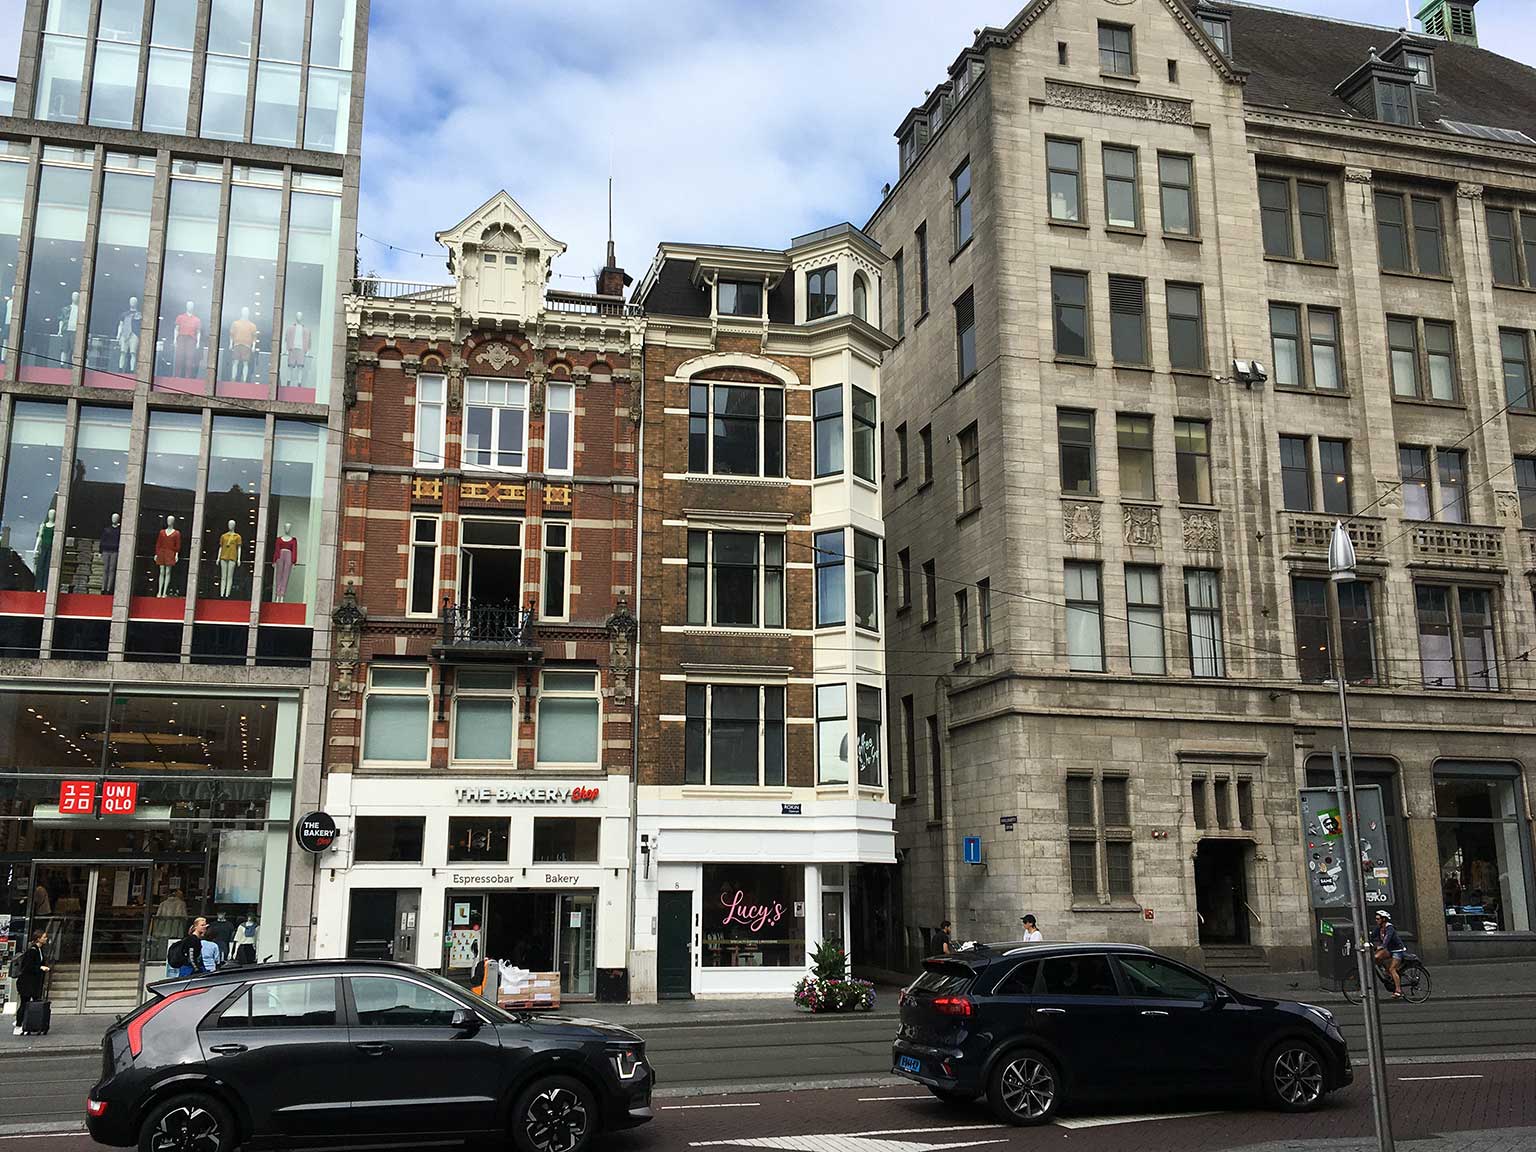 Van rechts naar links: Peek & Cloppenburg, Kromelleboogsteeg, Rokin 8, Rokin 10, Amsterdam